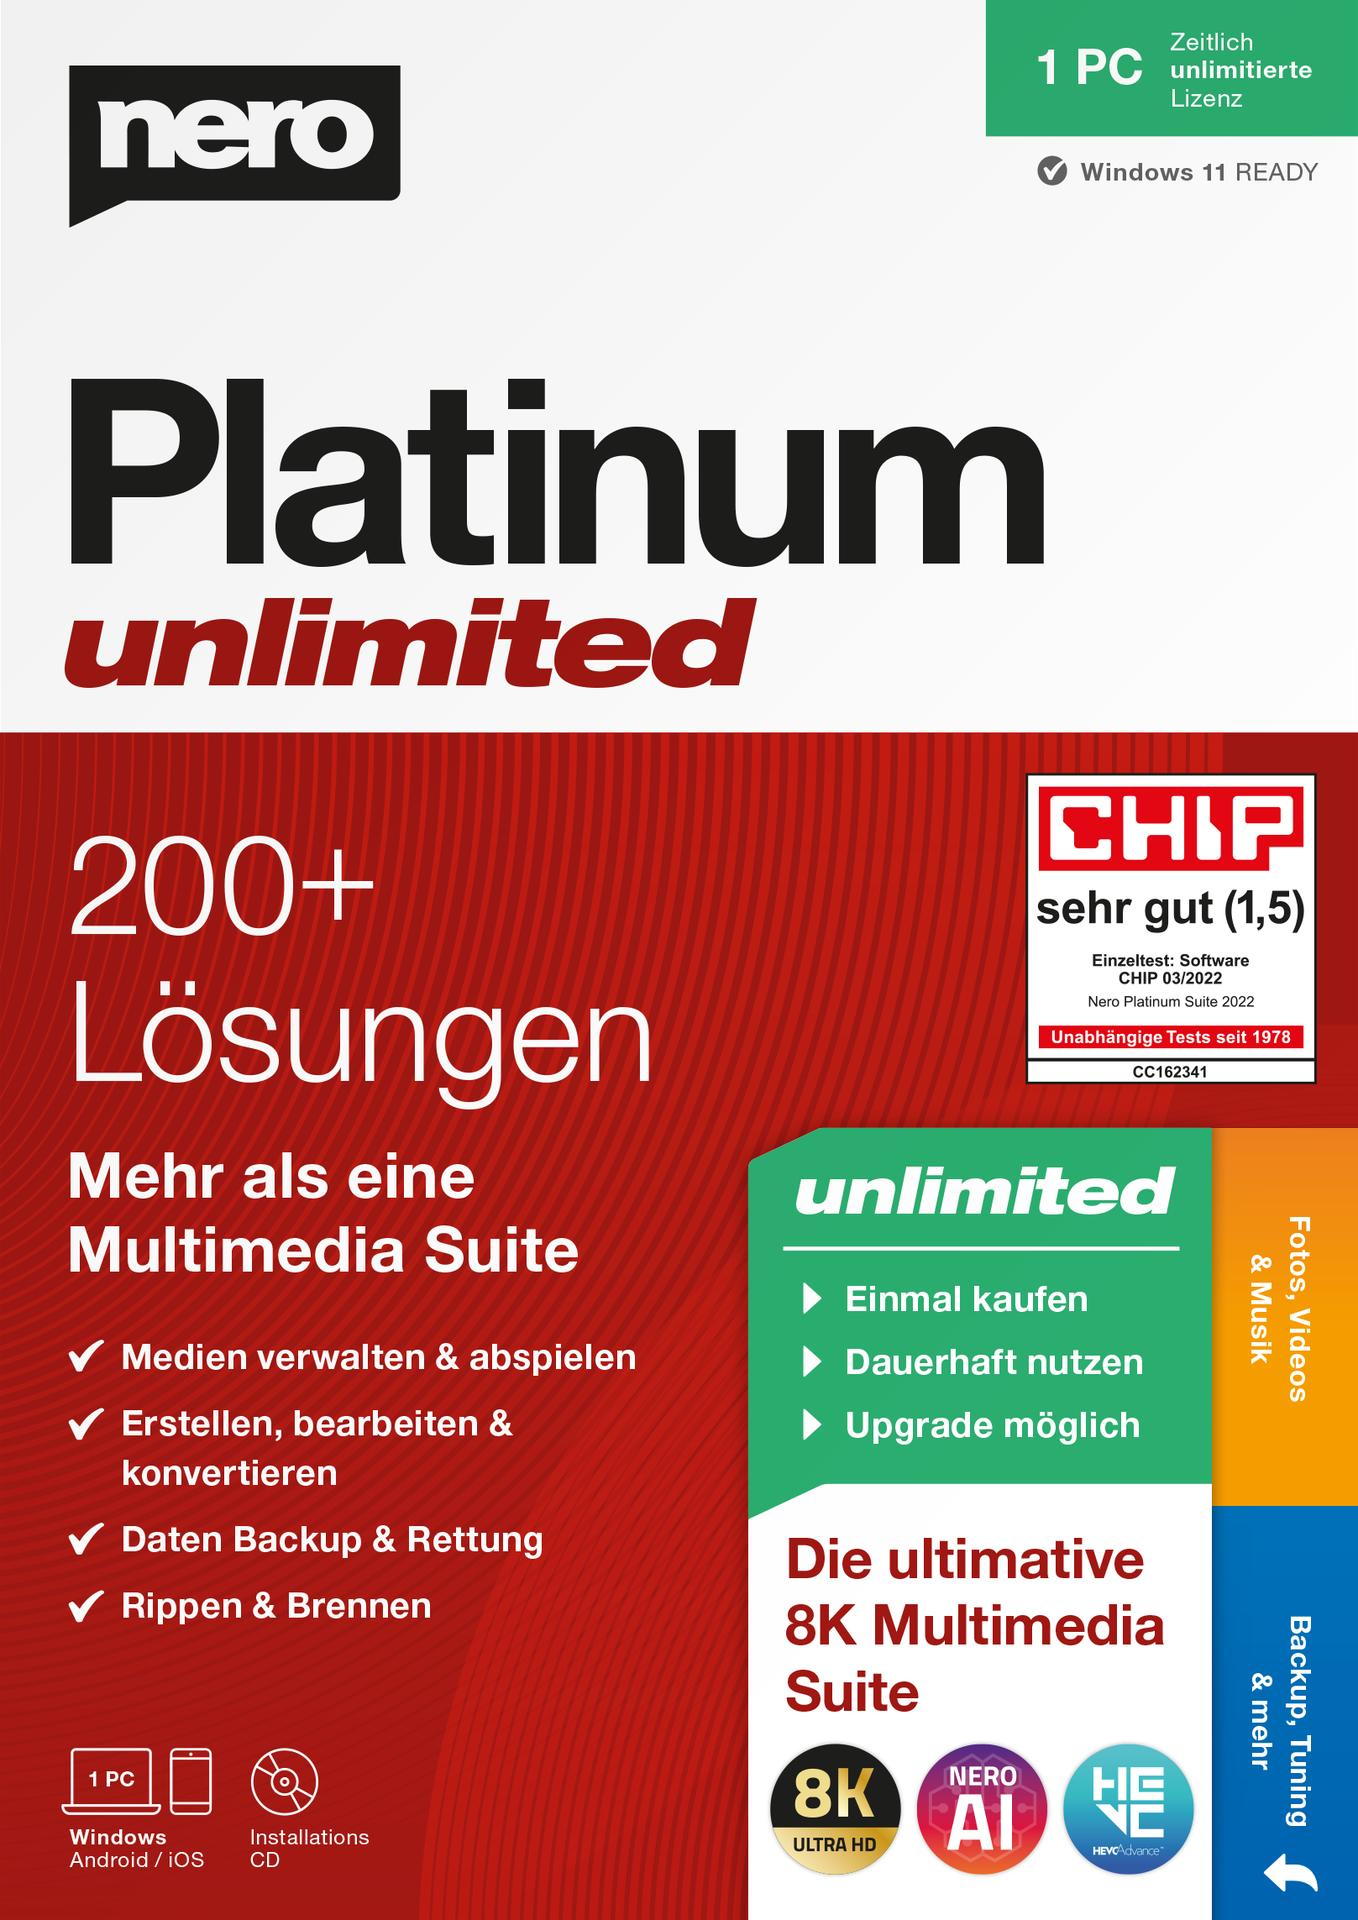 [PC] Nero Platinum unlimited -